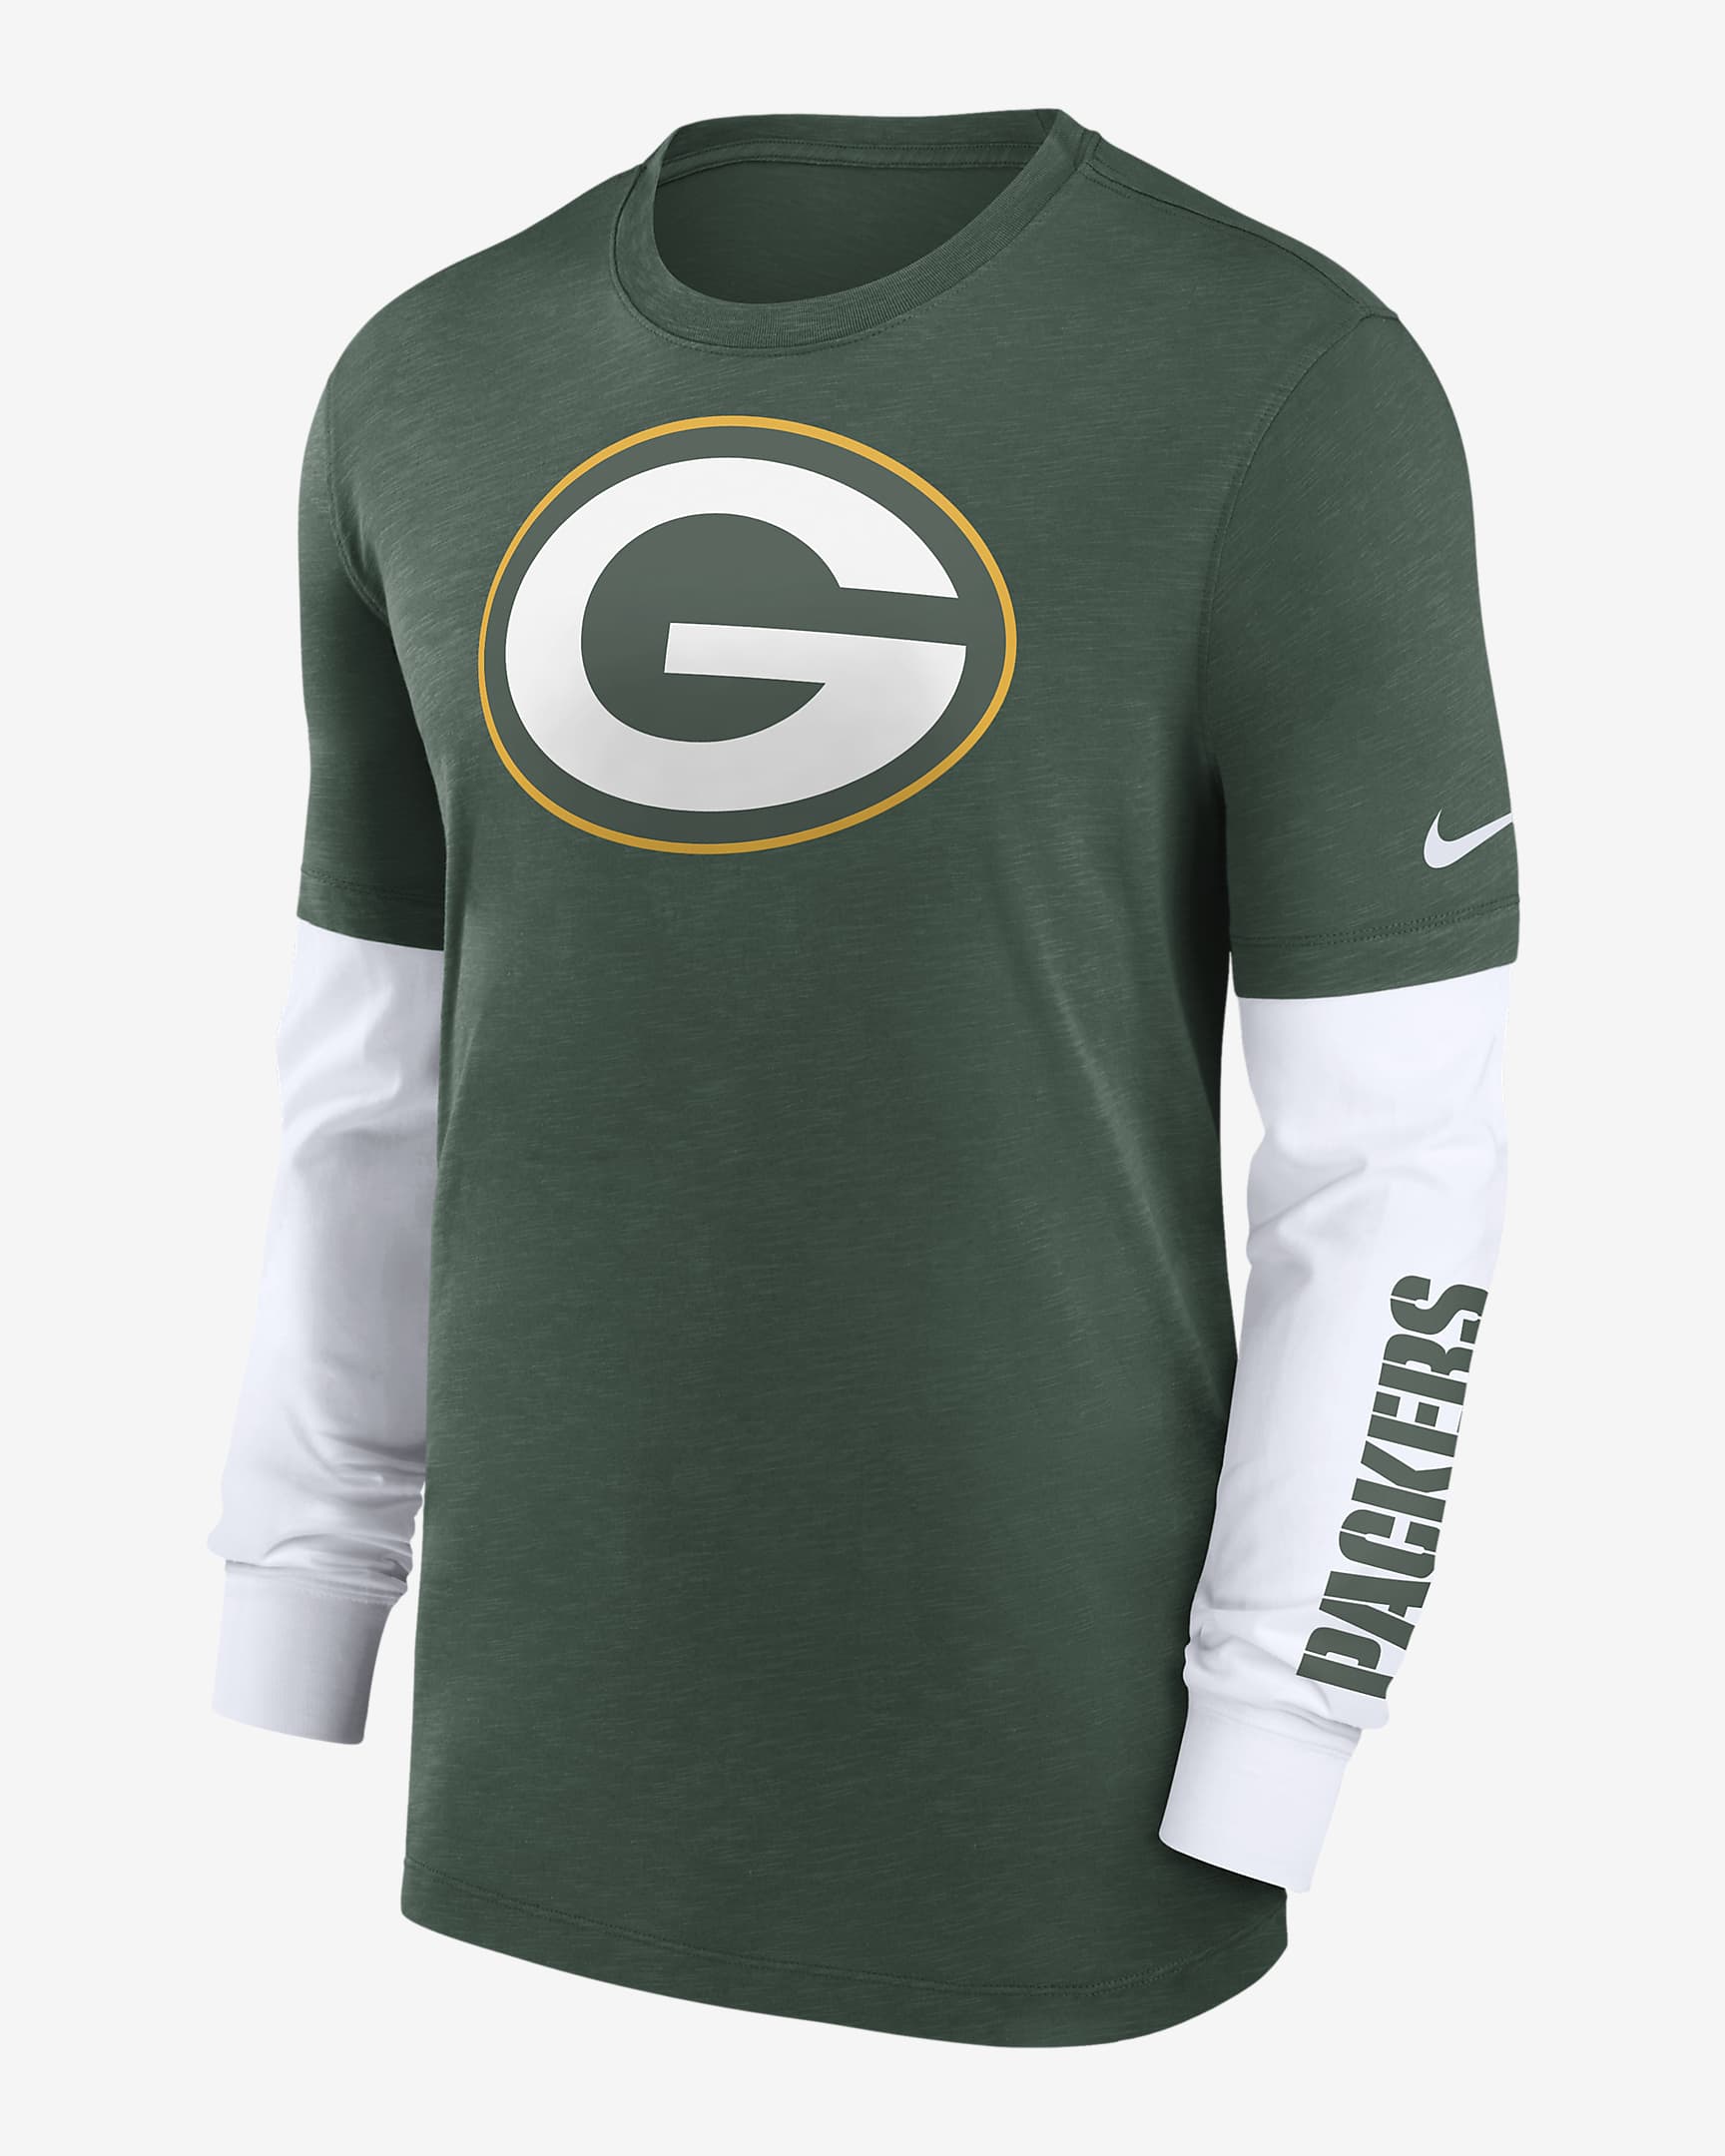 Playera de manga larga Nike de la NFL para hombre Green Bay Packers ...